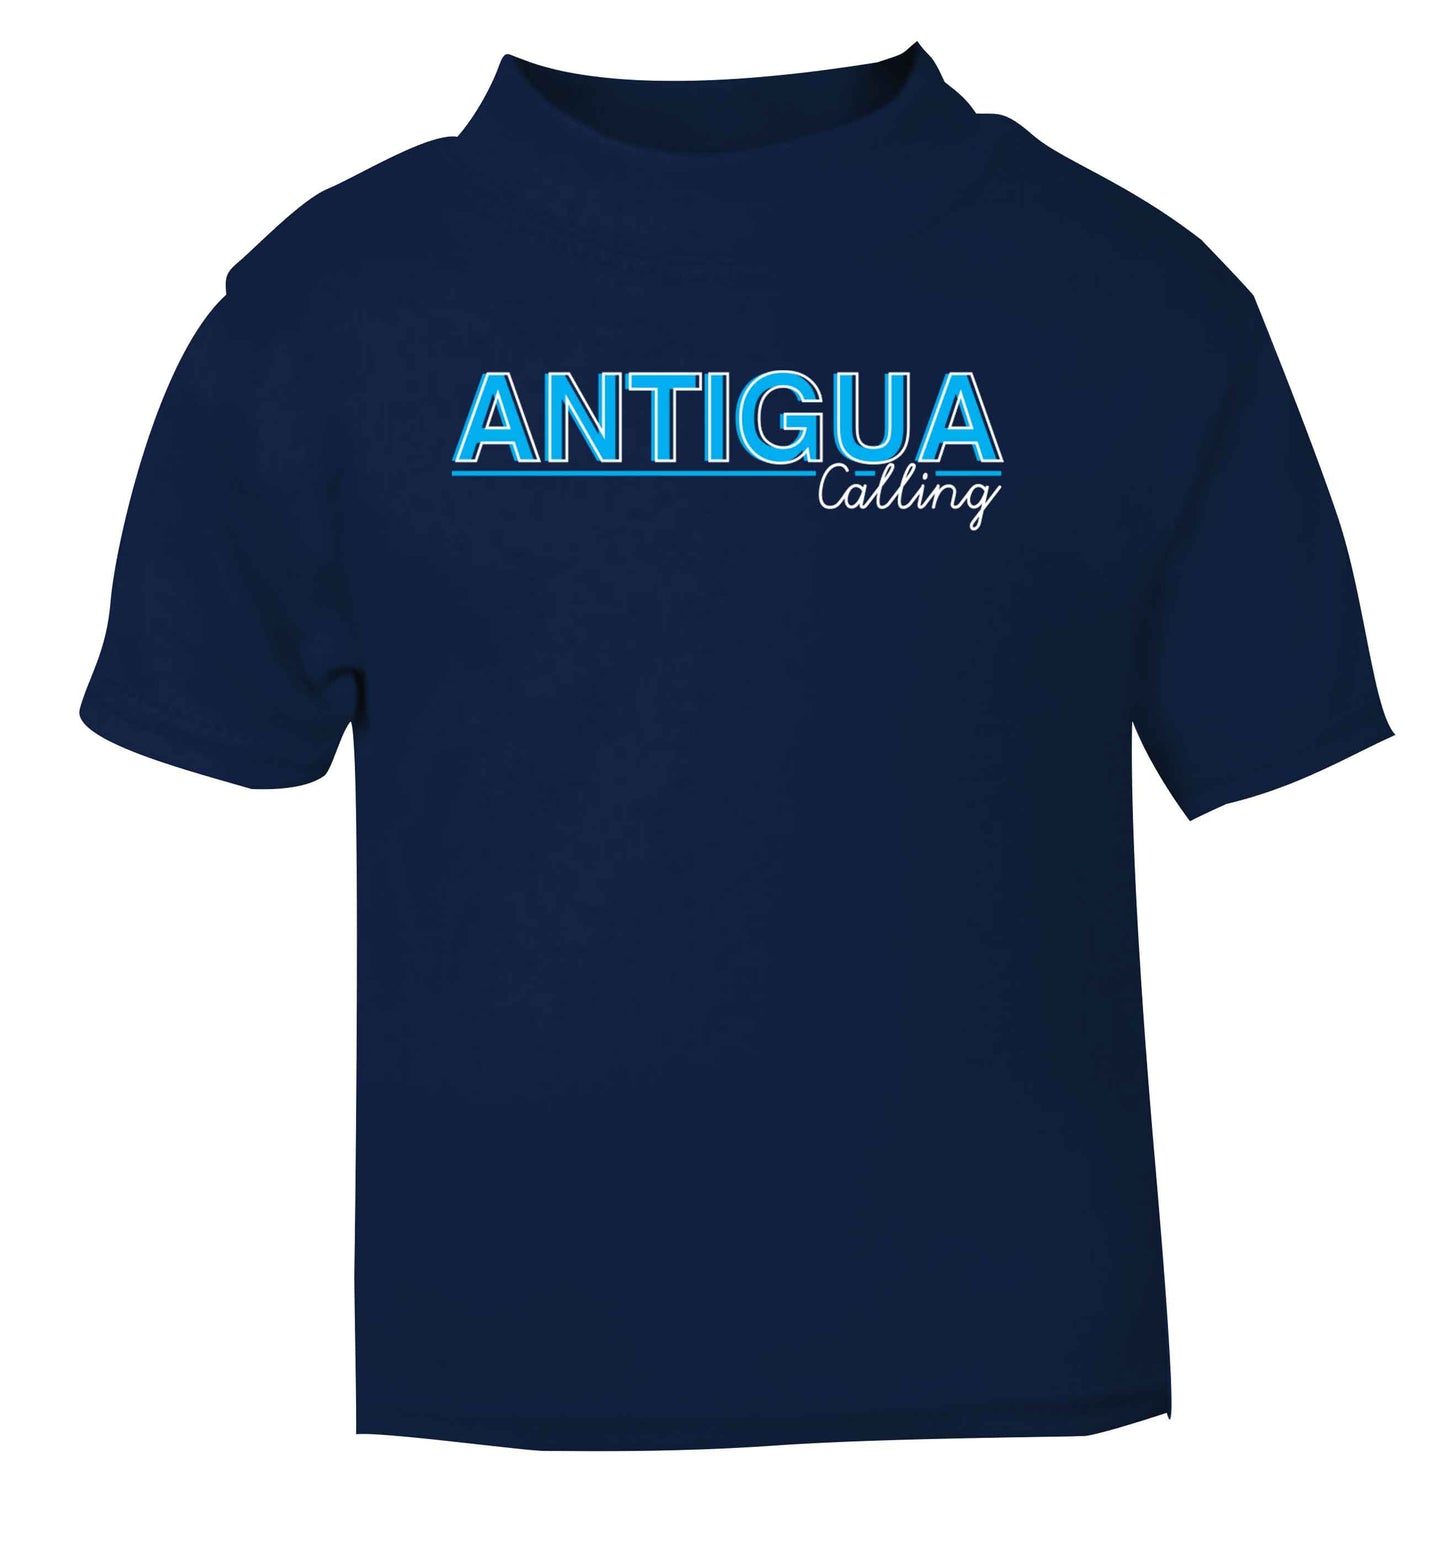 Antigua calling navy Baby Toddler Tshirt 2 Years